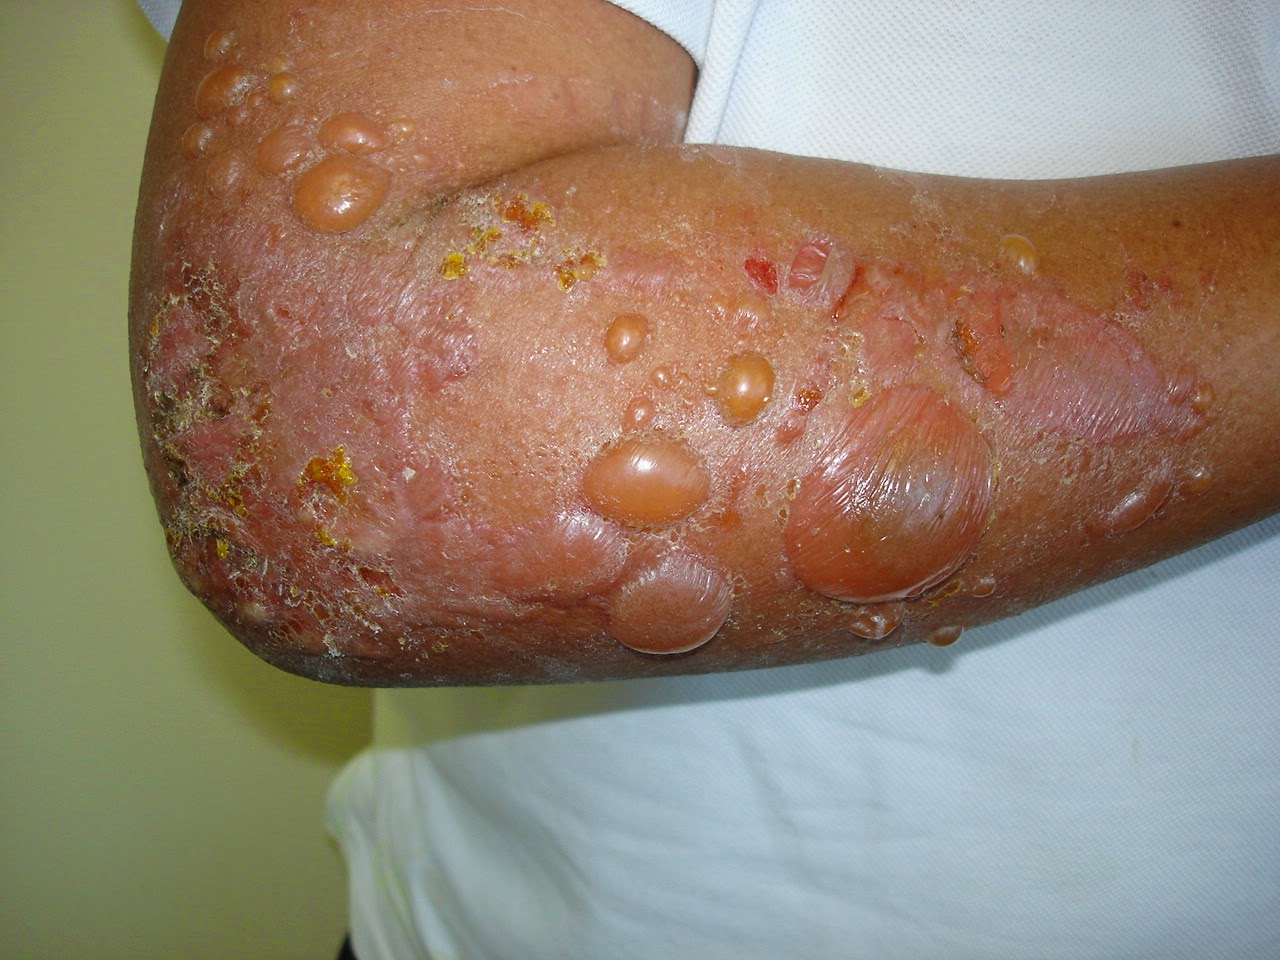 spongiotic dermatitis คือ treatment